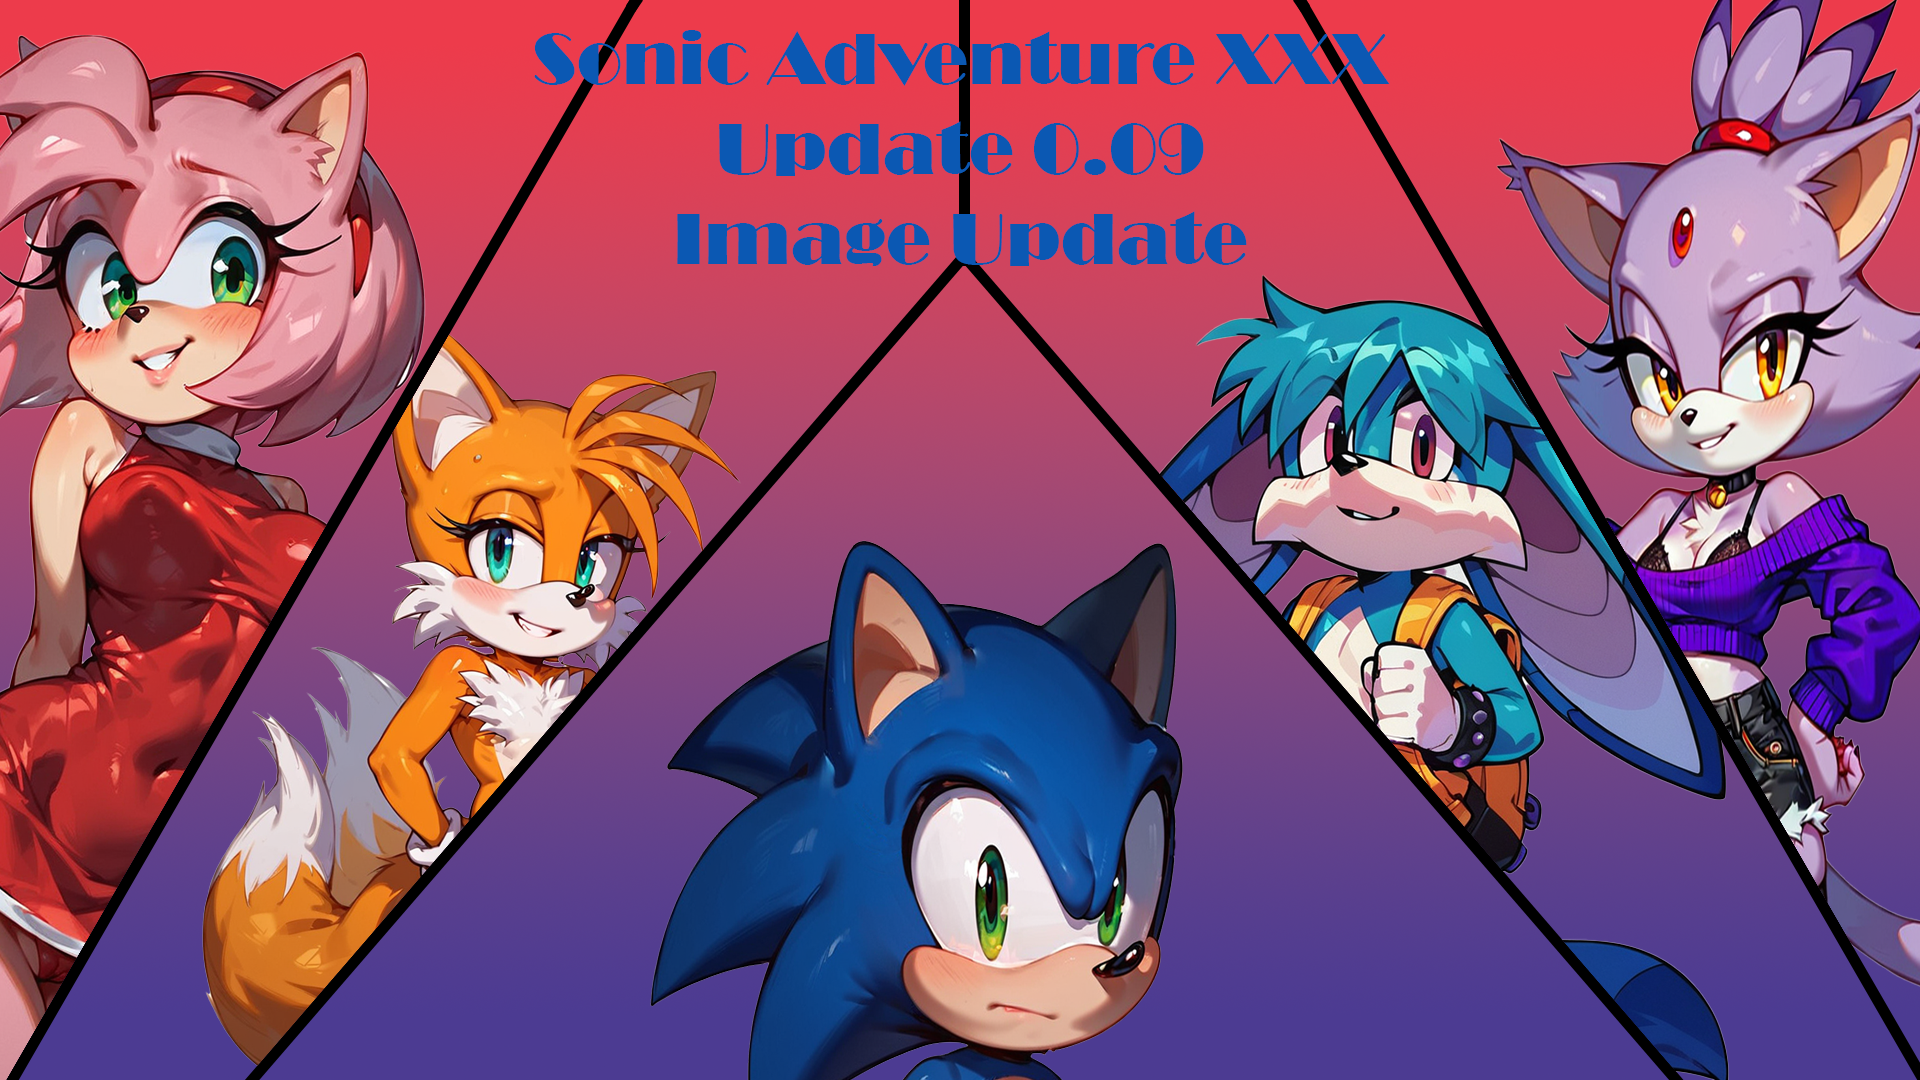 Sonic Adventure XXX 0.09